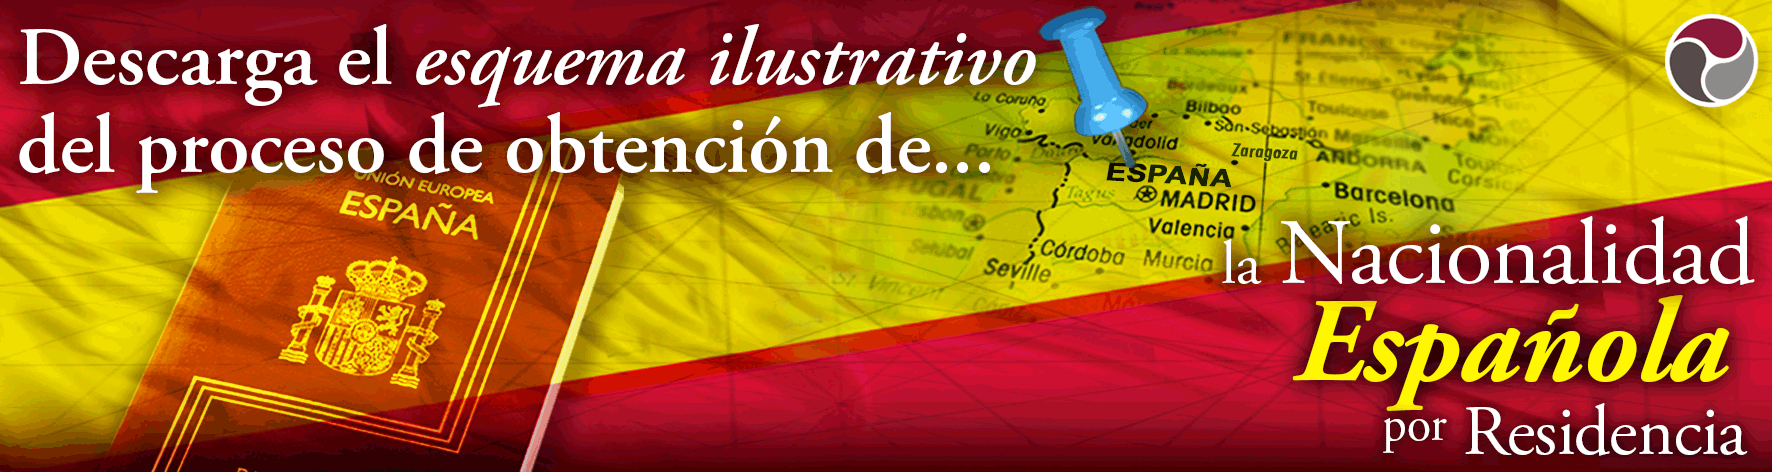 Nacionalidad ad web Habeas Legal 2 1 - ¿Sabes cuál es la importancia de la caducidad de los documentos en el proceso de obtención de la Nacionalidad Española?